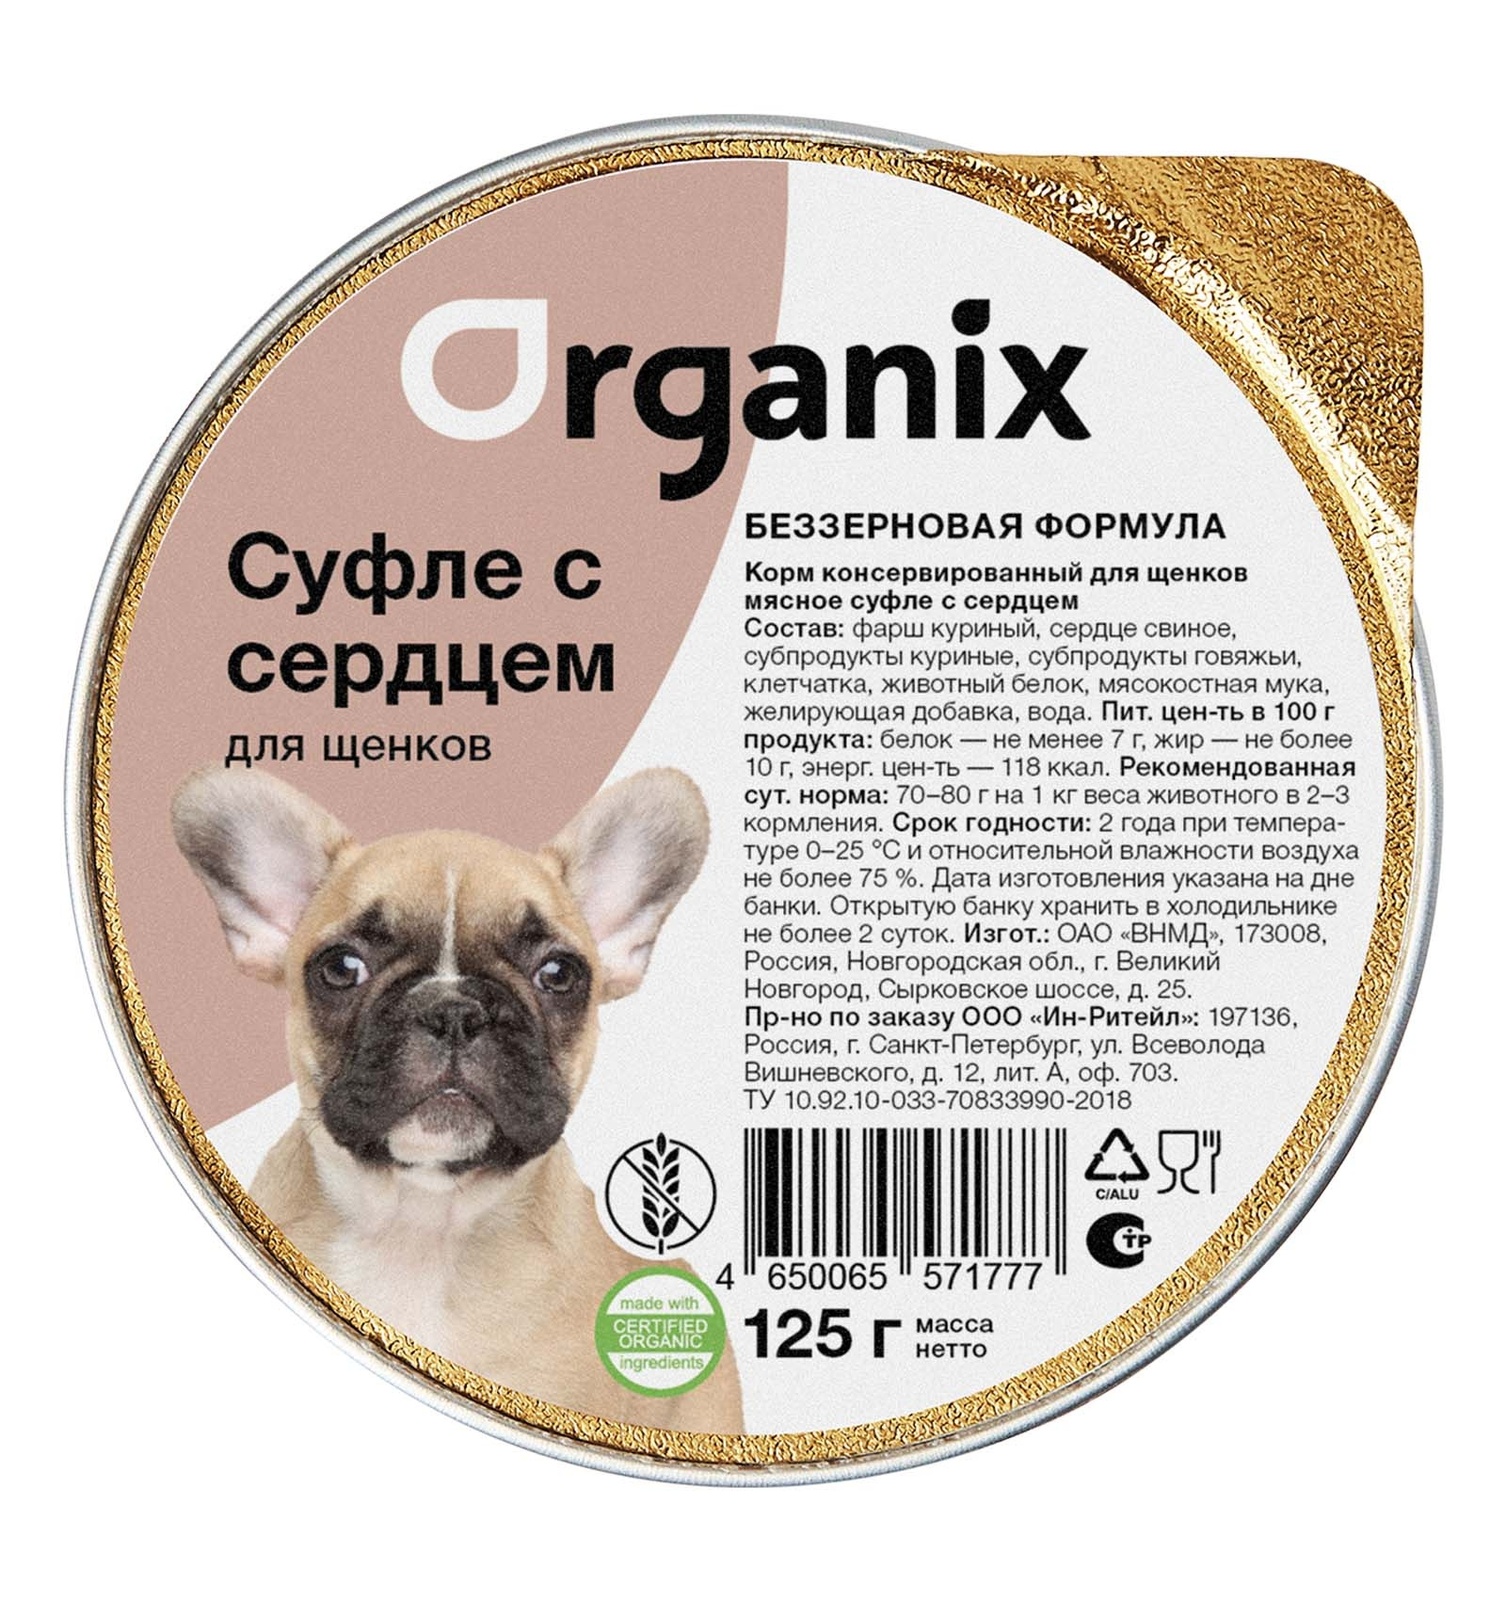 Organix консервы Organix мясное суфле с сердцем для щенков (125 г)